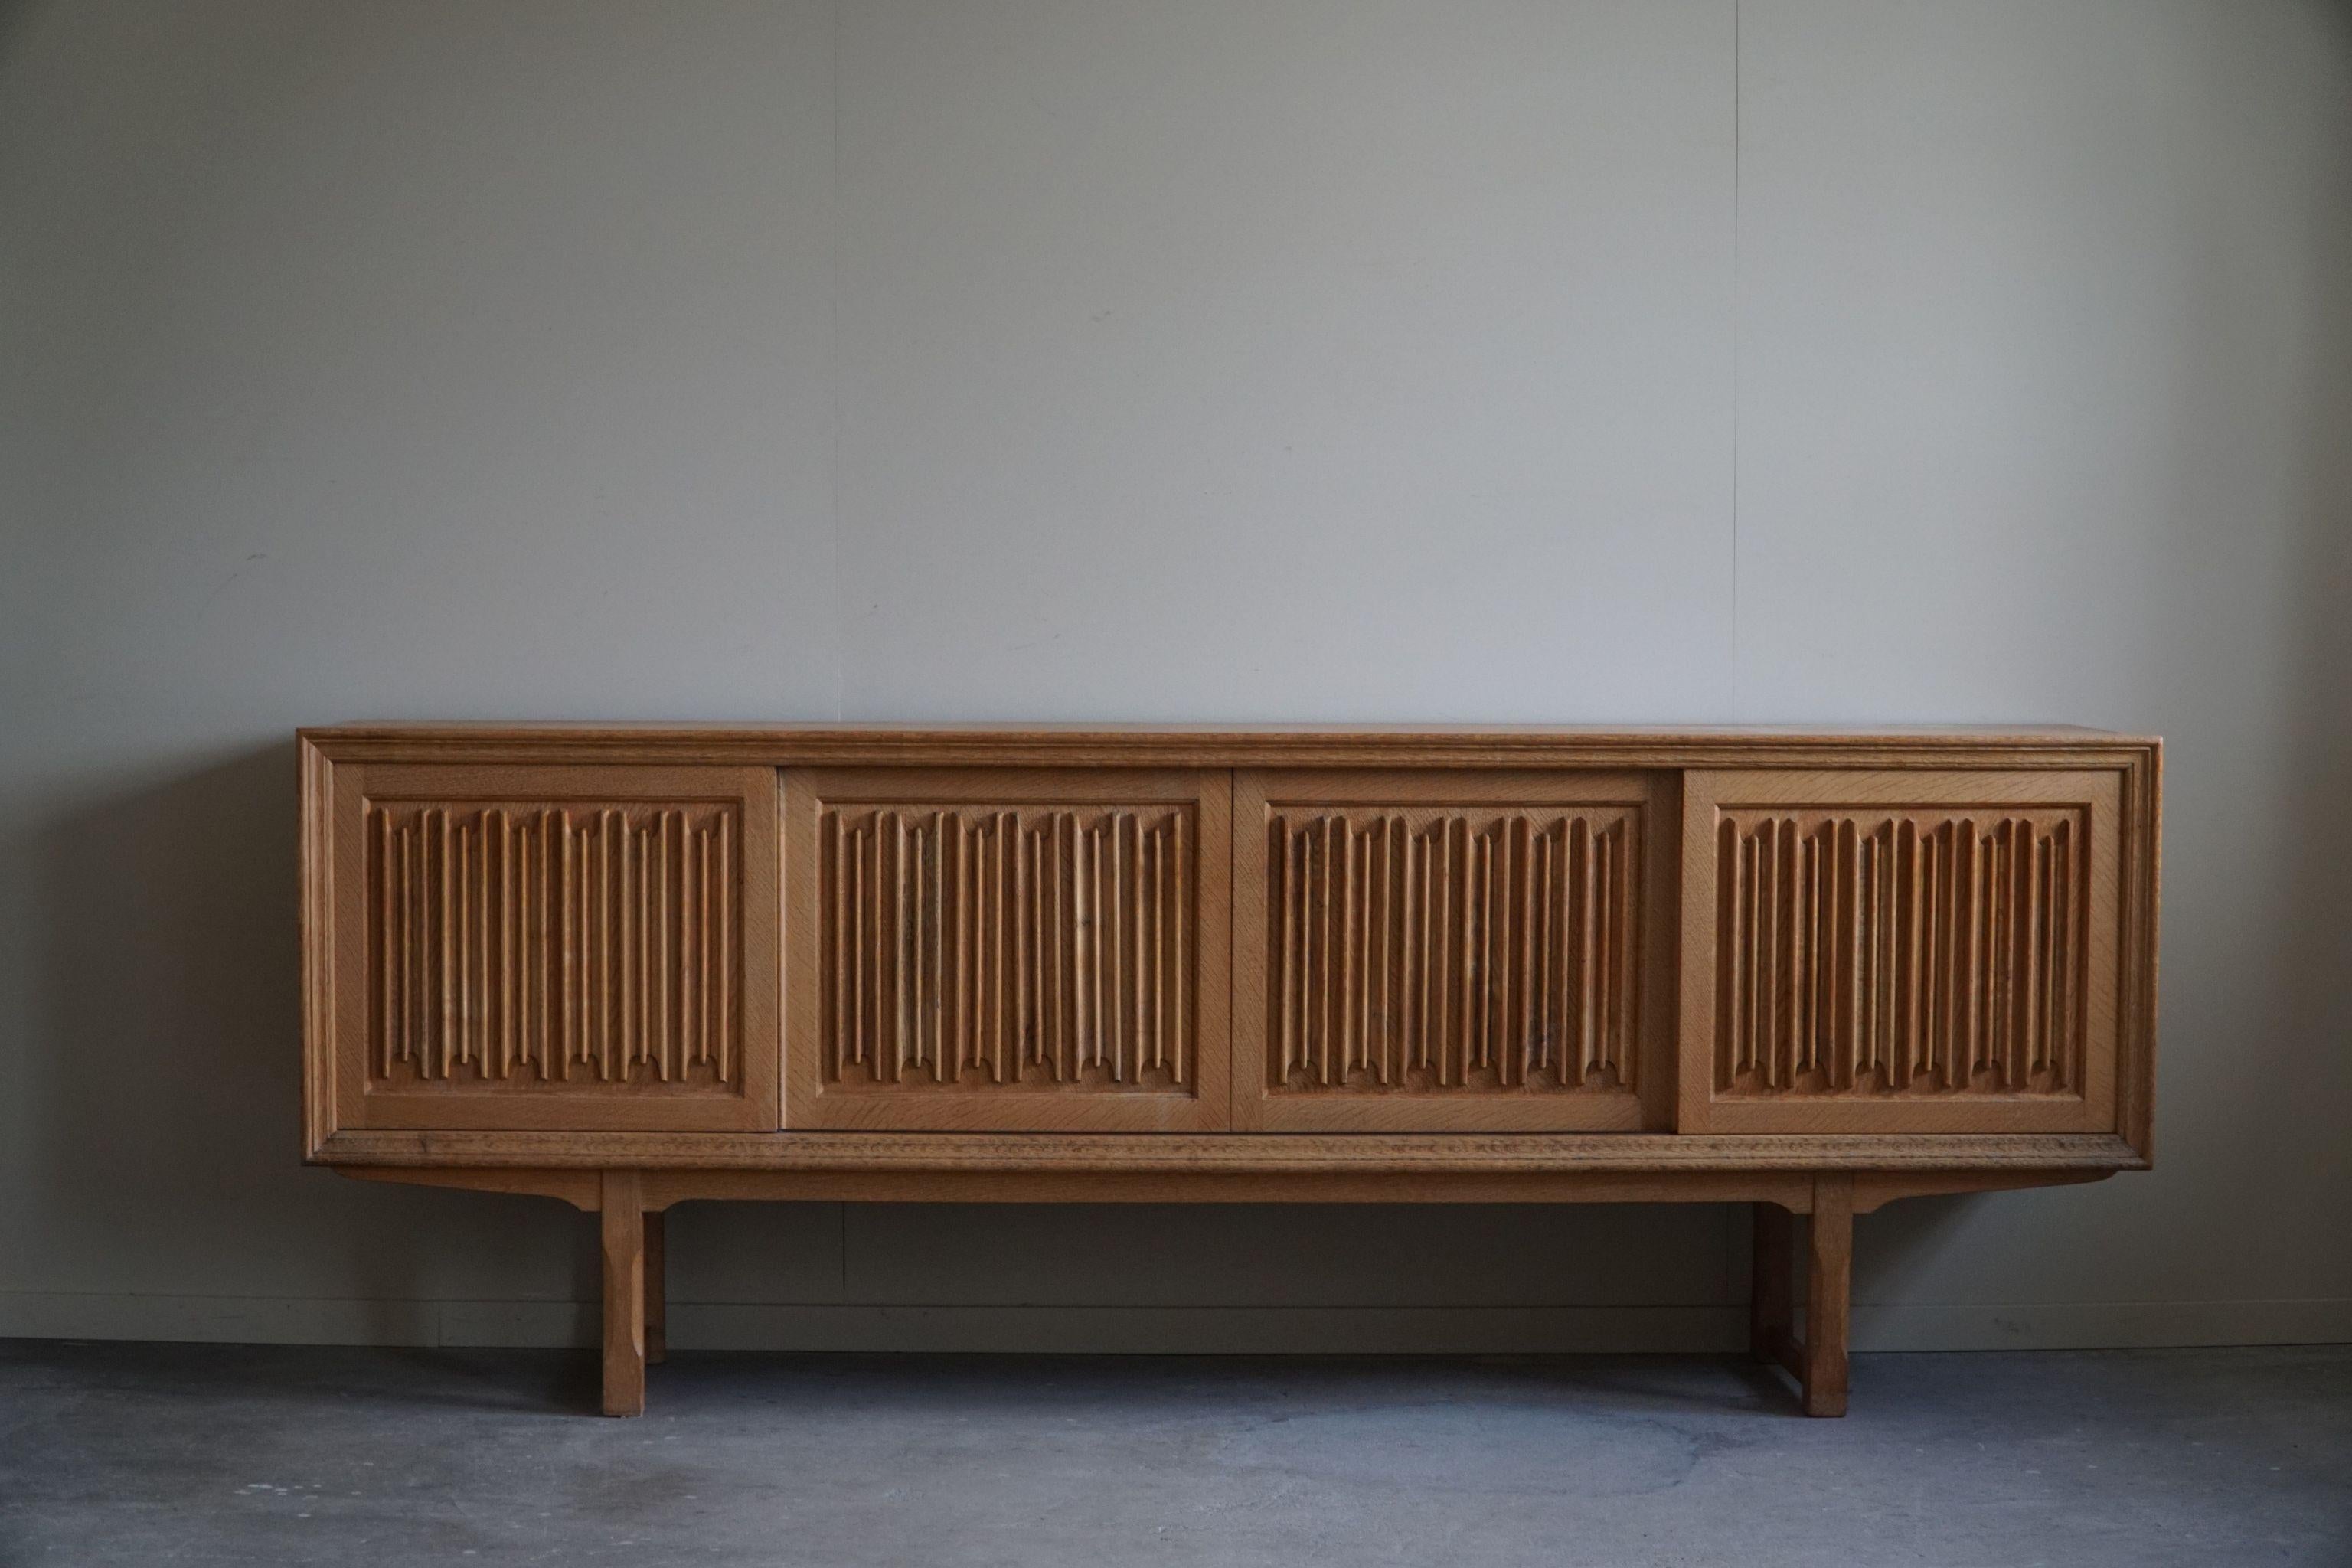 Sculptural Low Sideboard in Oak, Mid Century Modern, Danish Cabinetmaker, 1960s For Sale 9